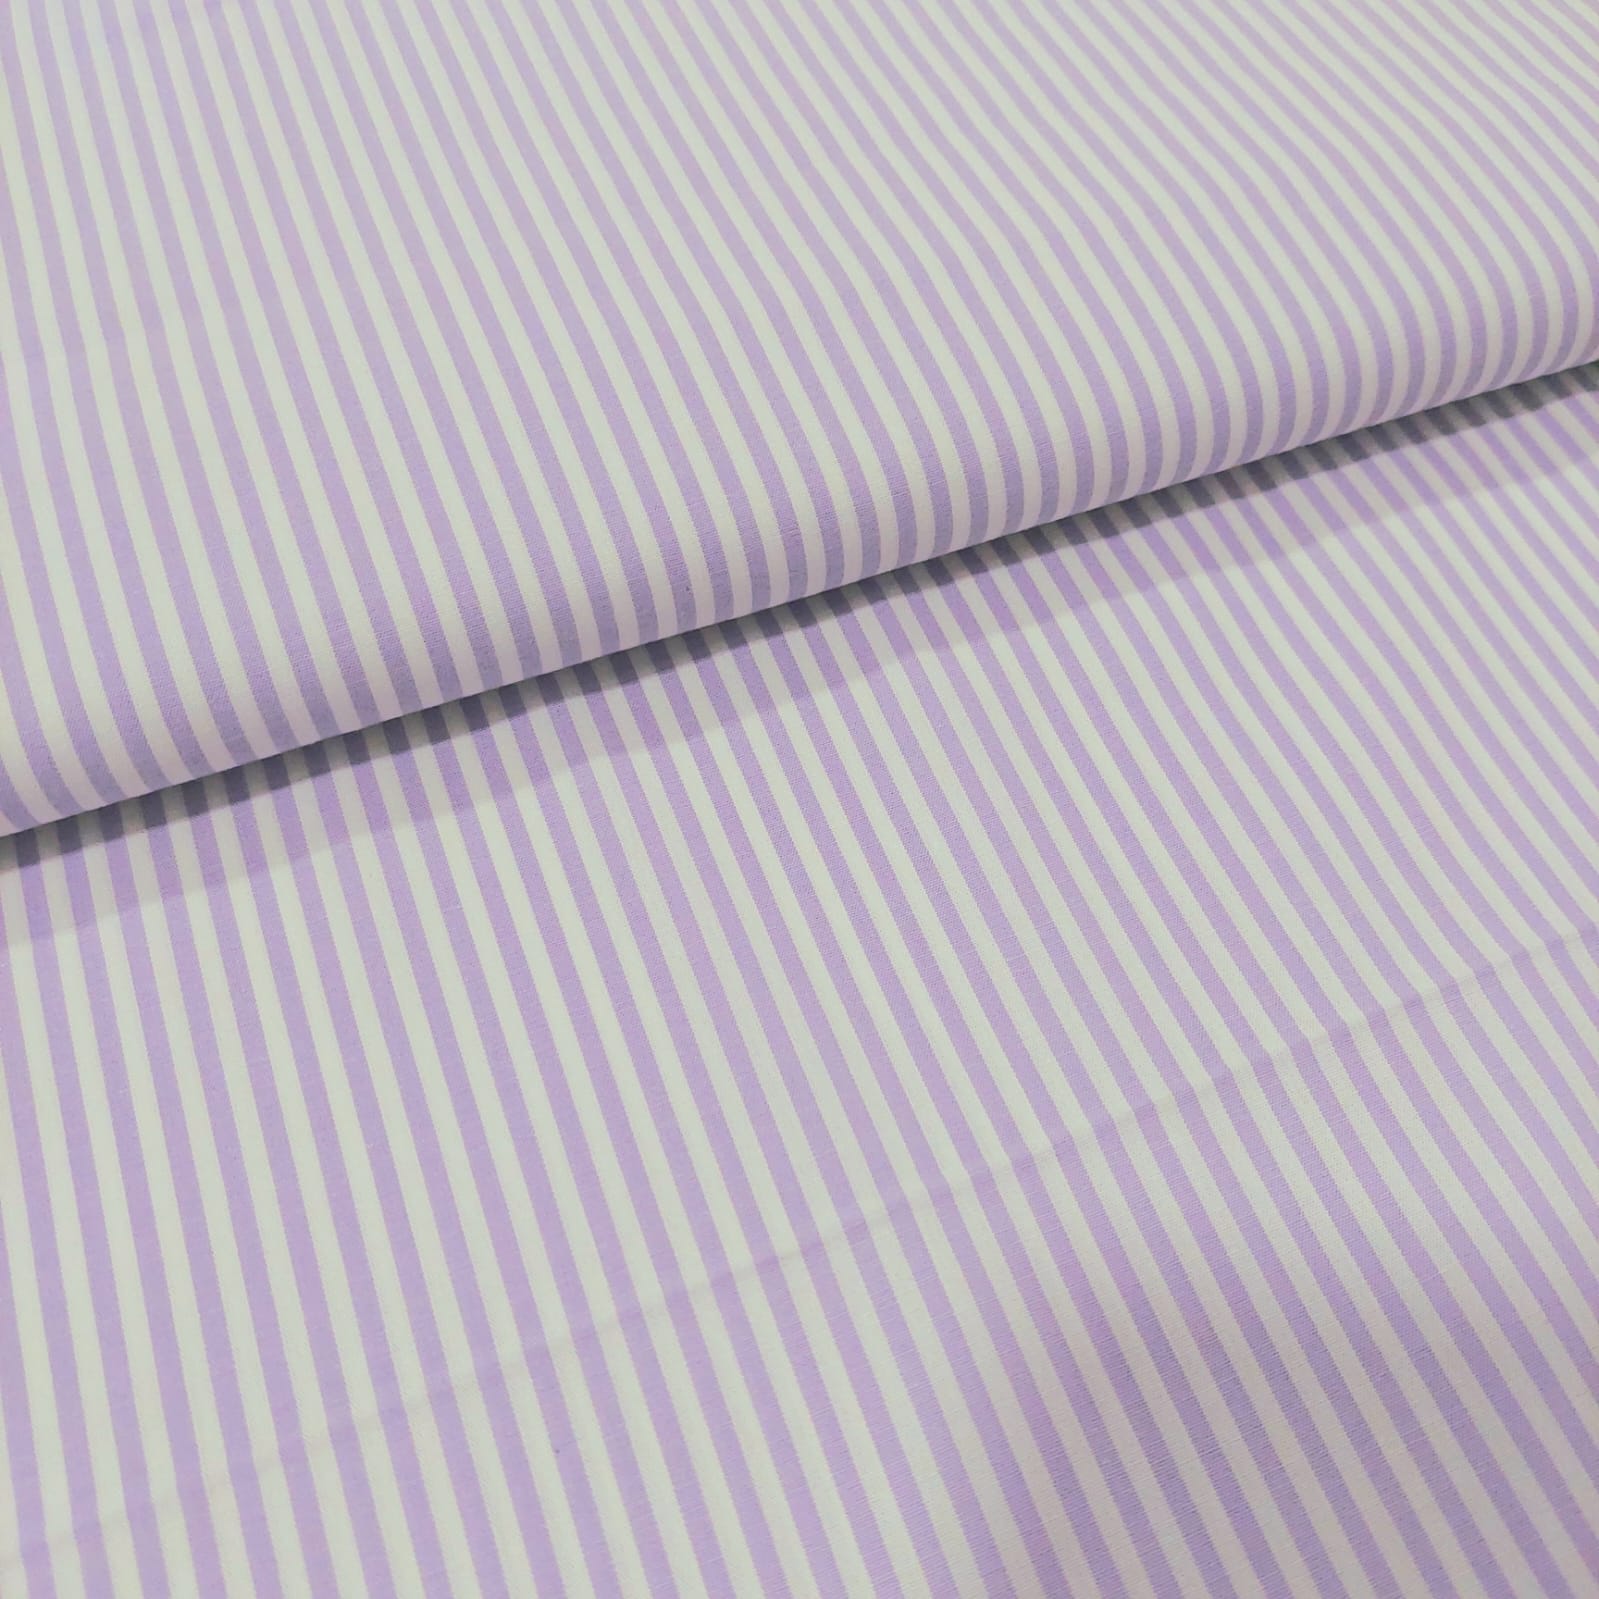 Tecido - tricoline fio tinto - listrado lilas - Igaratinga Tecidos         